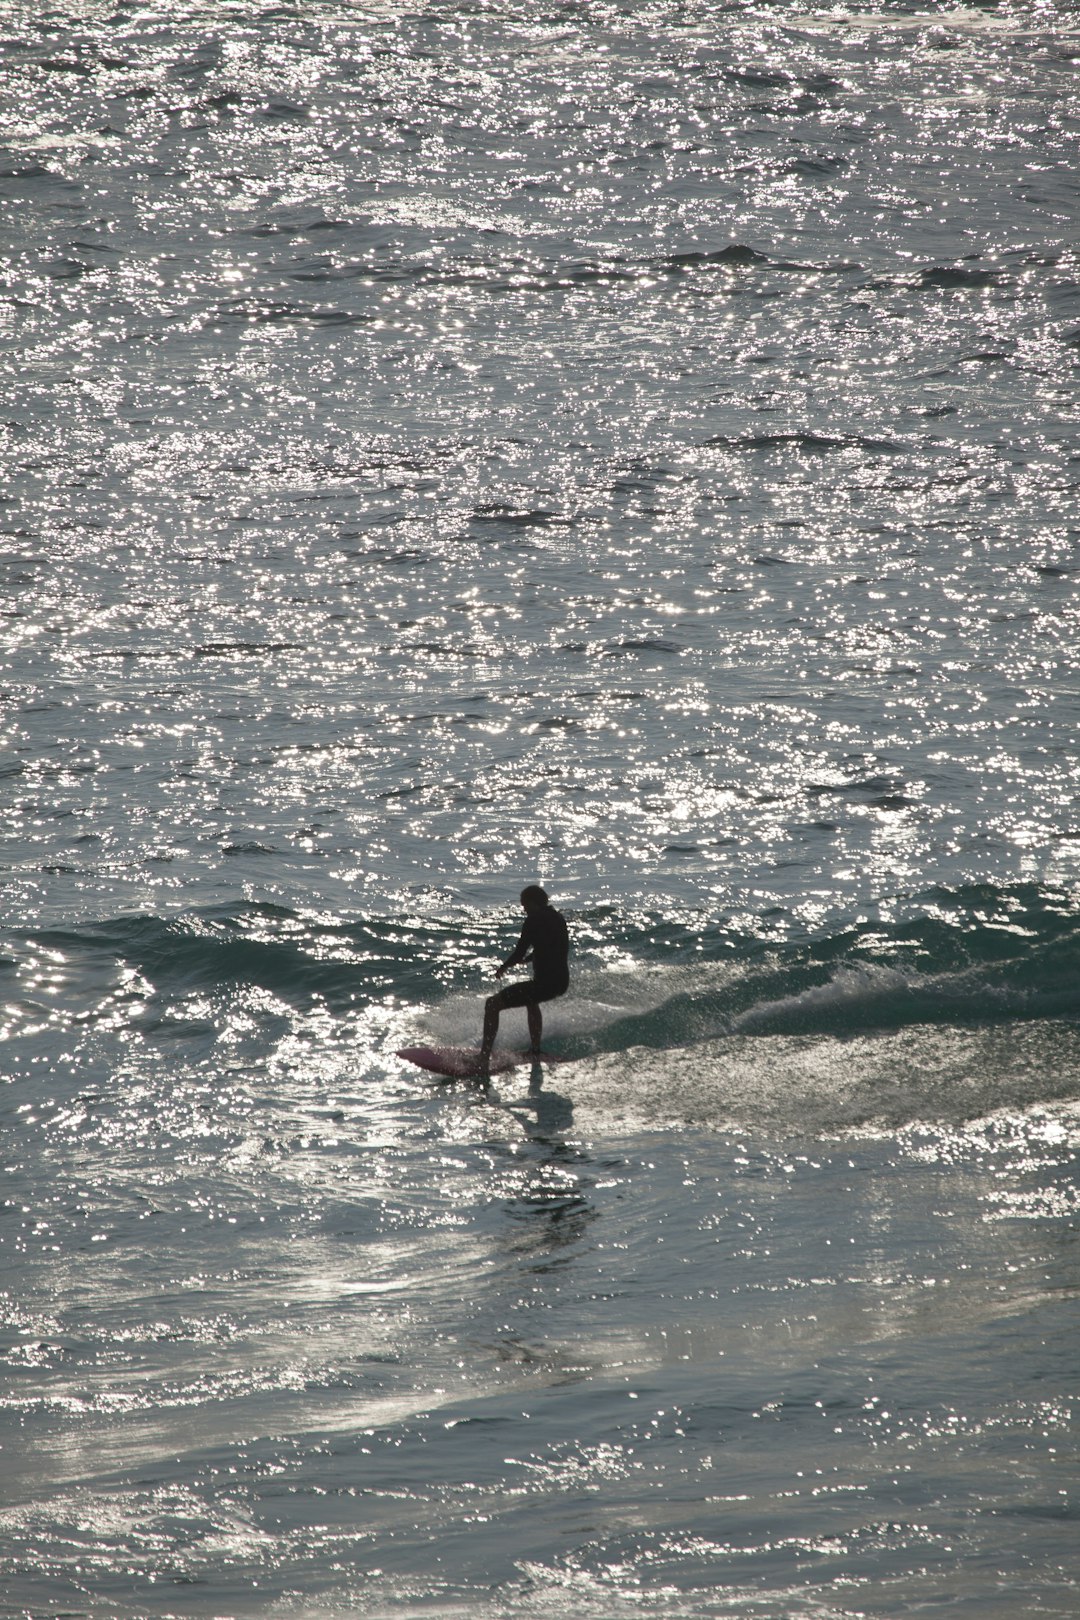 Surfing photo spot Tamarama Beach Manly Beach